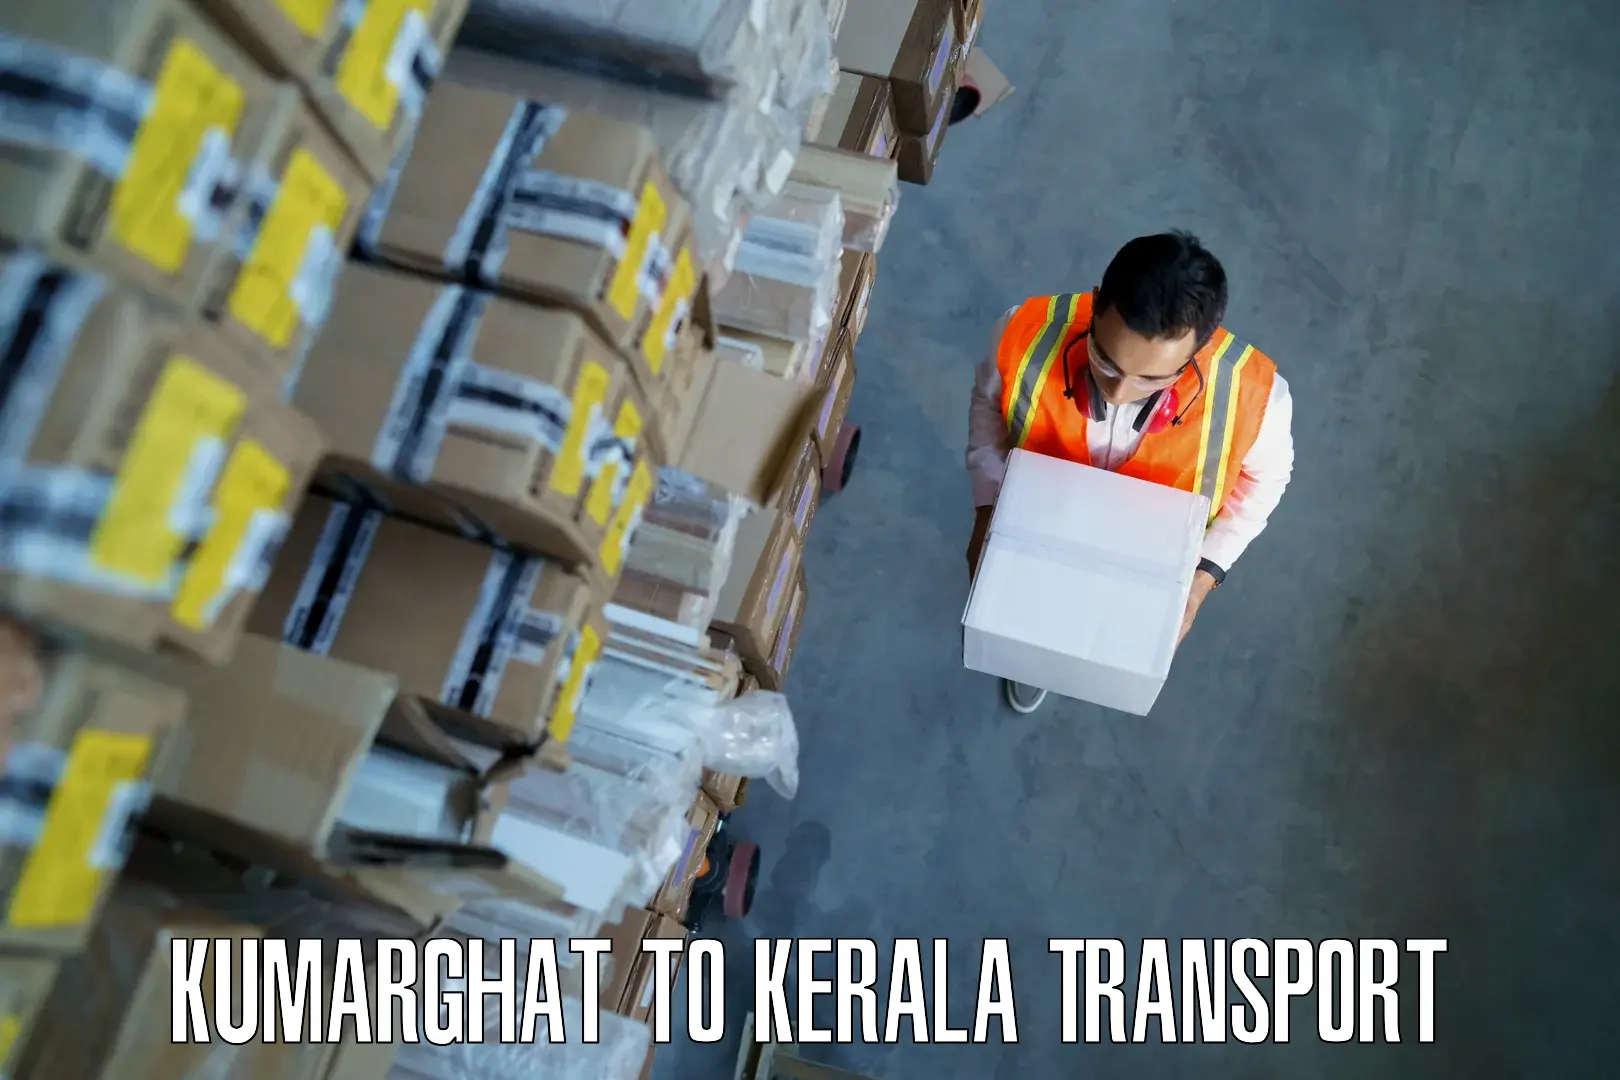 Logistics transportation services Kumarghat to Kalanjoor